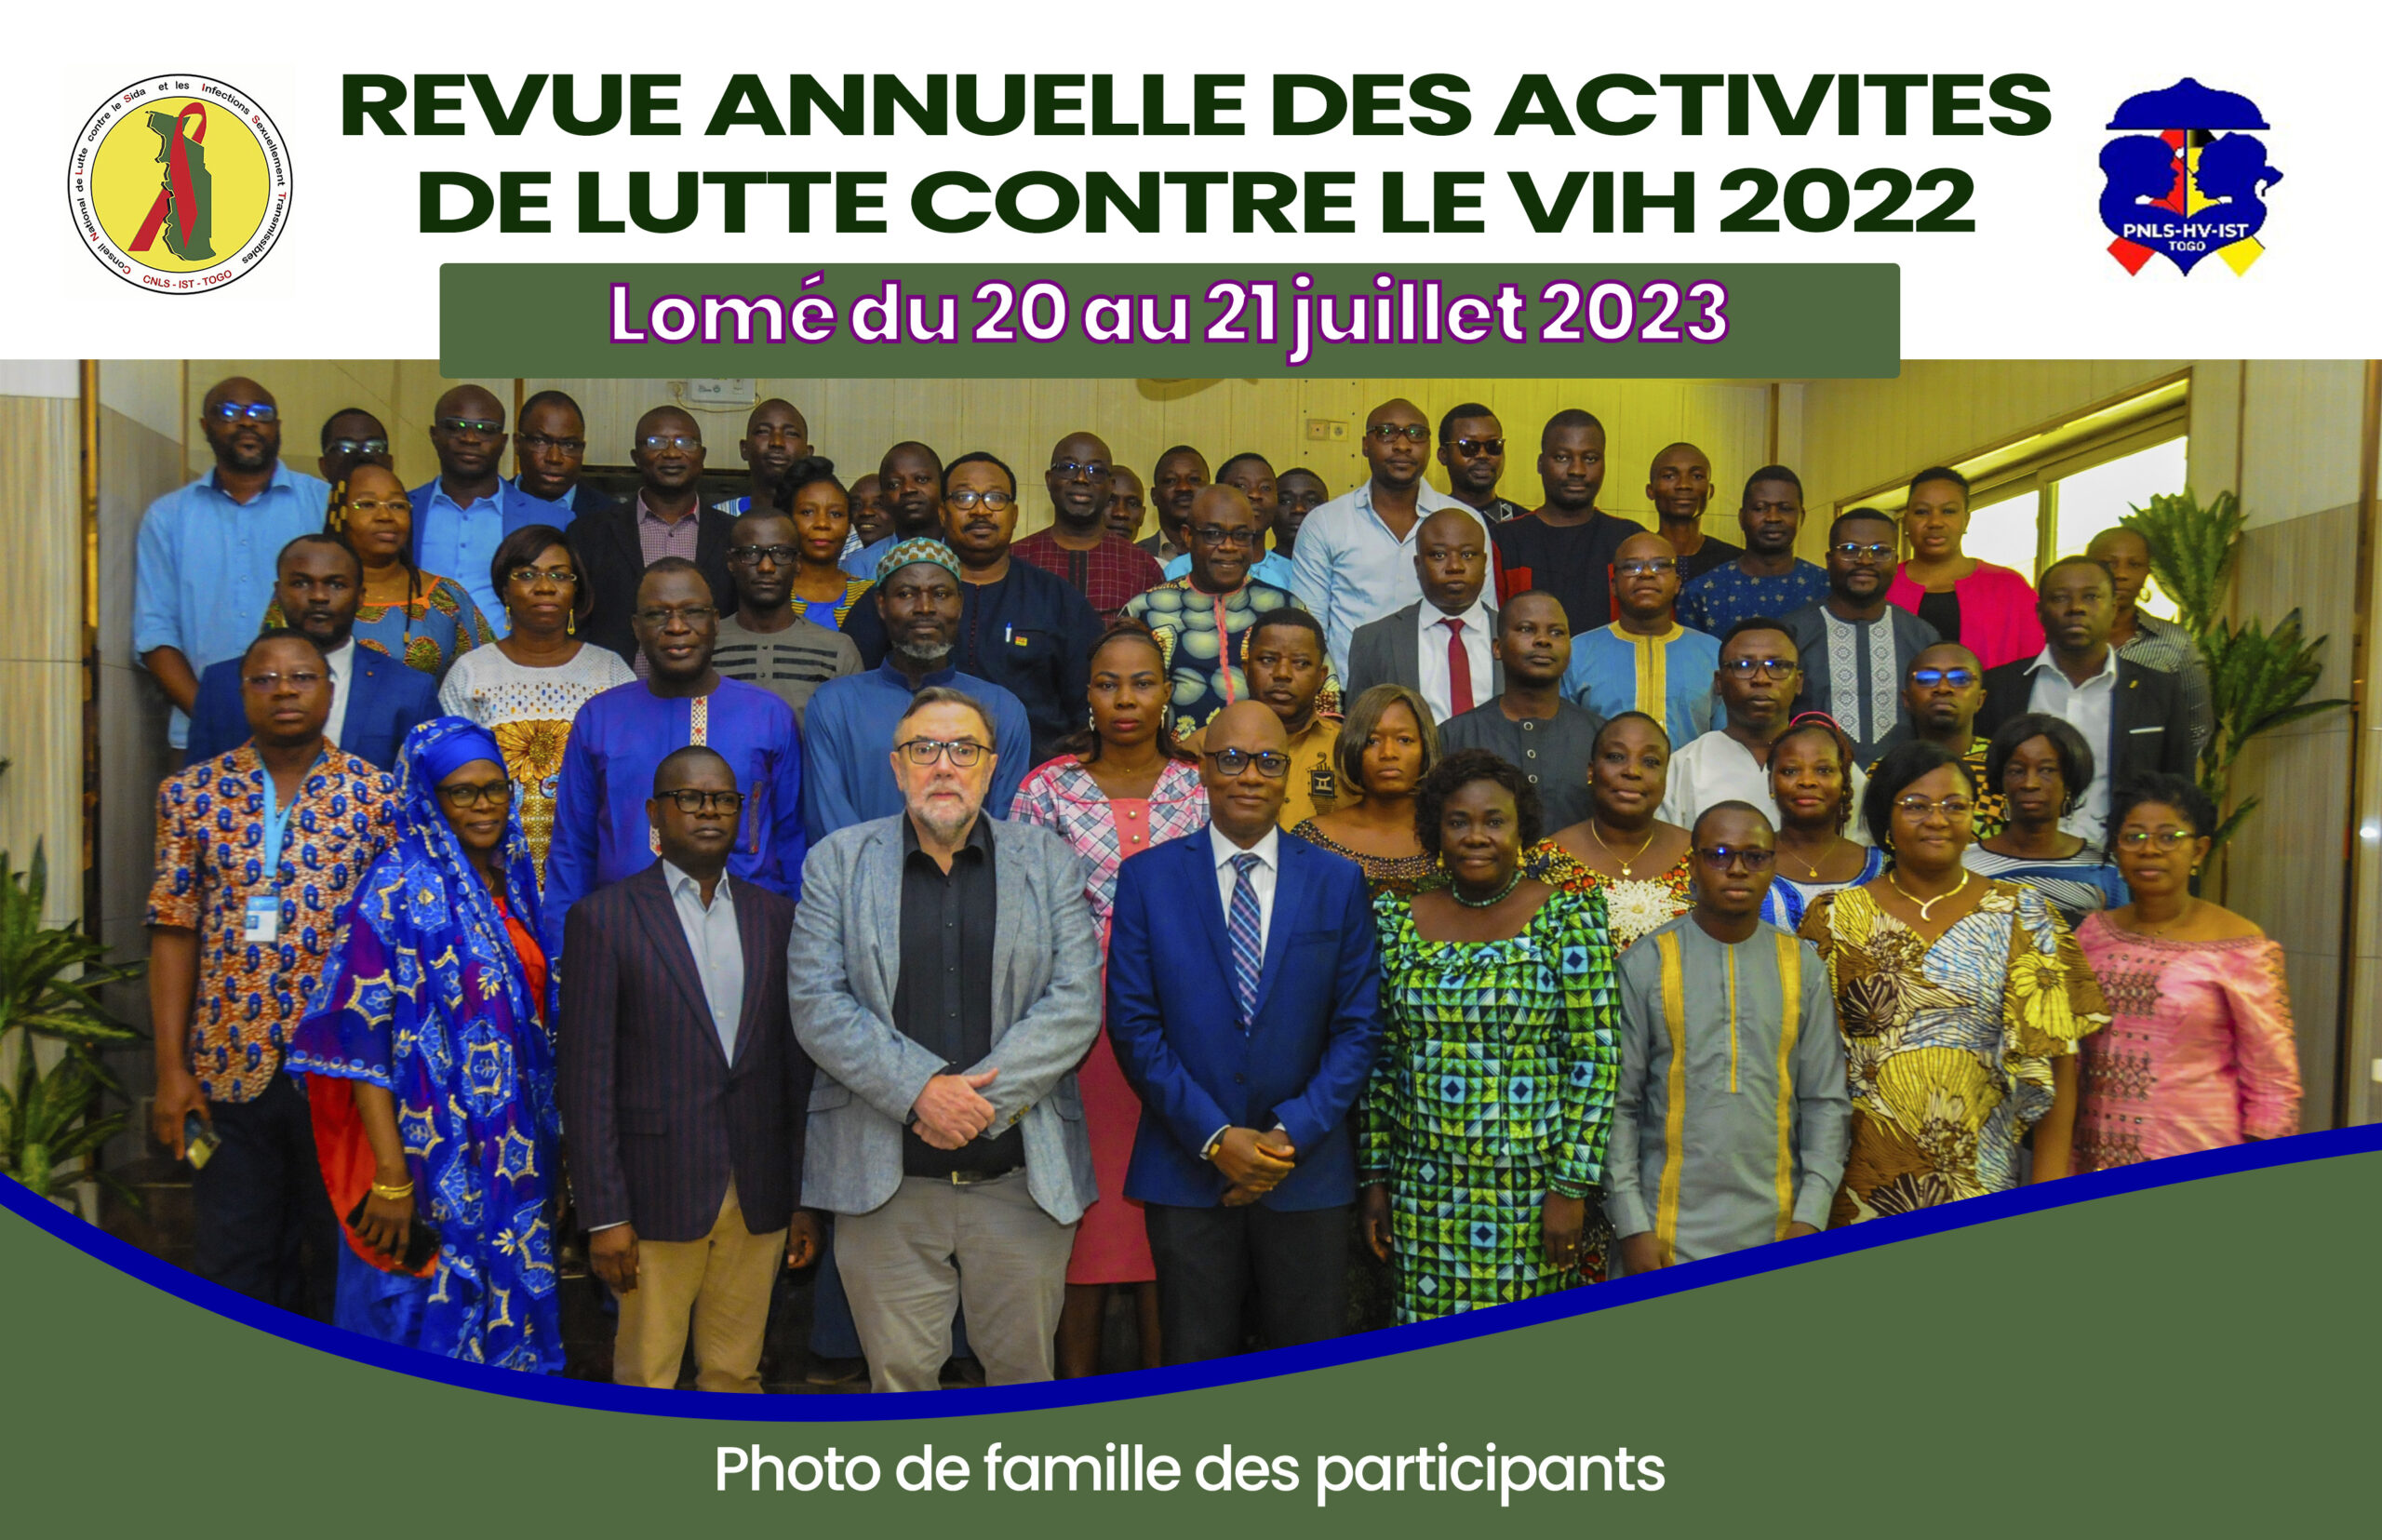 Grandes innovations développées en 2022 pour la lutte contre le VIH Sida au Togo, le CNLS-IST a fait son bilan.